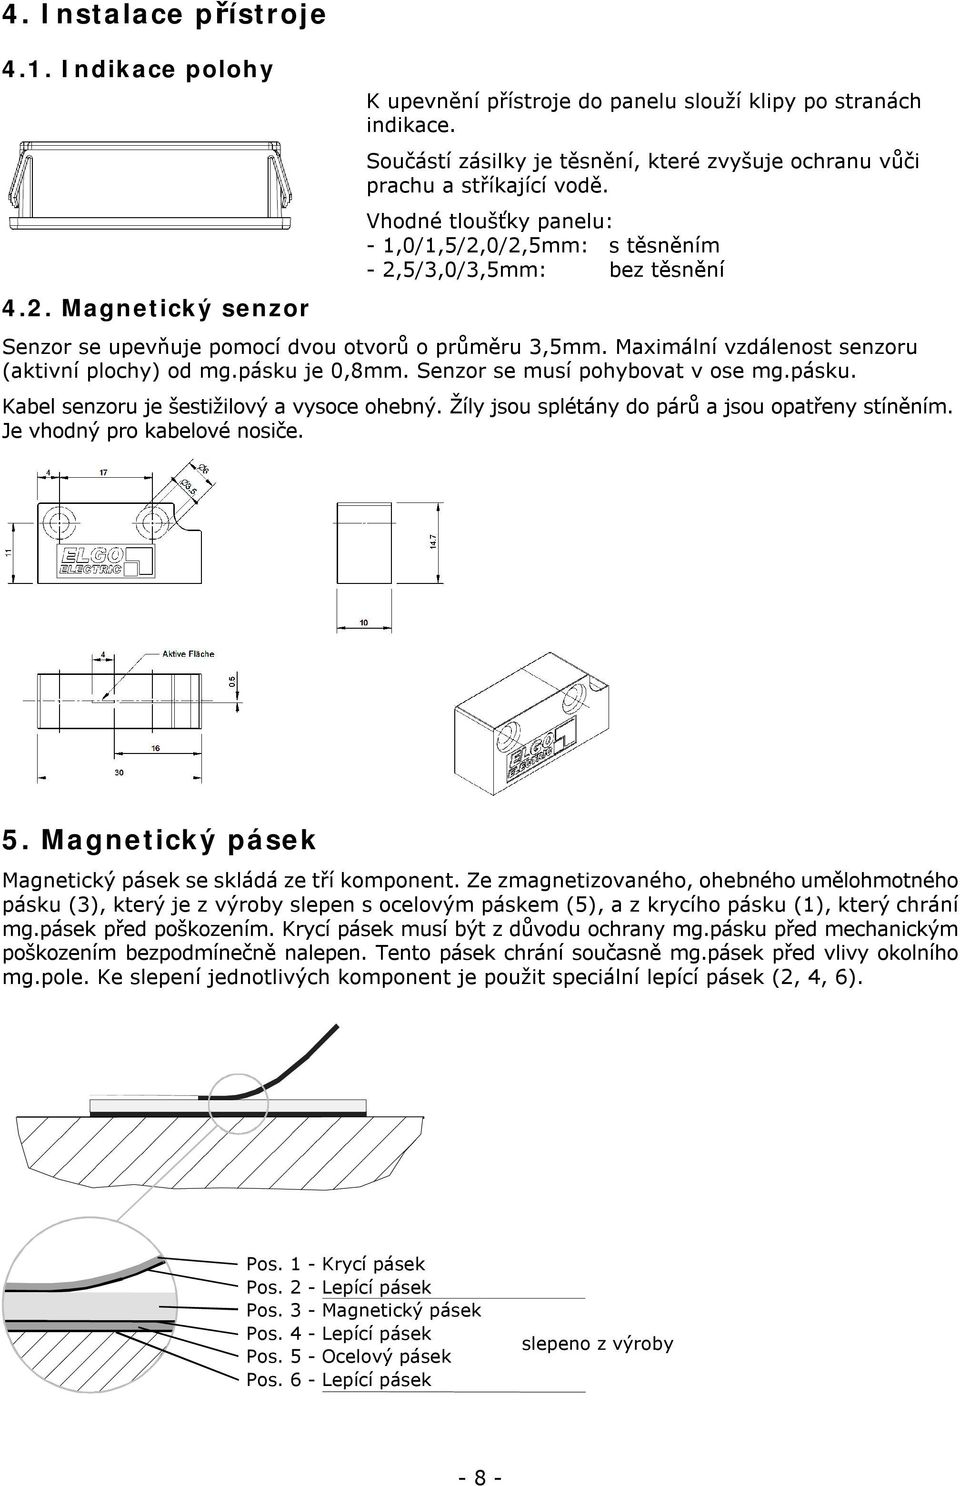 Vhodné tloušťky panelu: - 1,0/1,5/2,0/2,5mm: s těsněním - 2,5/3,0/3,5mm: bez těsnění Senzor se upevňuje pomocí dvou otvorů o průměru 3,5mm. Maximální vzdálenost senzoru (aktivní plochy) od mg.